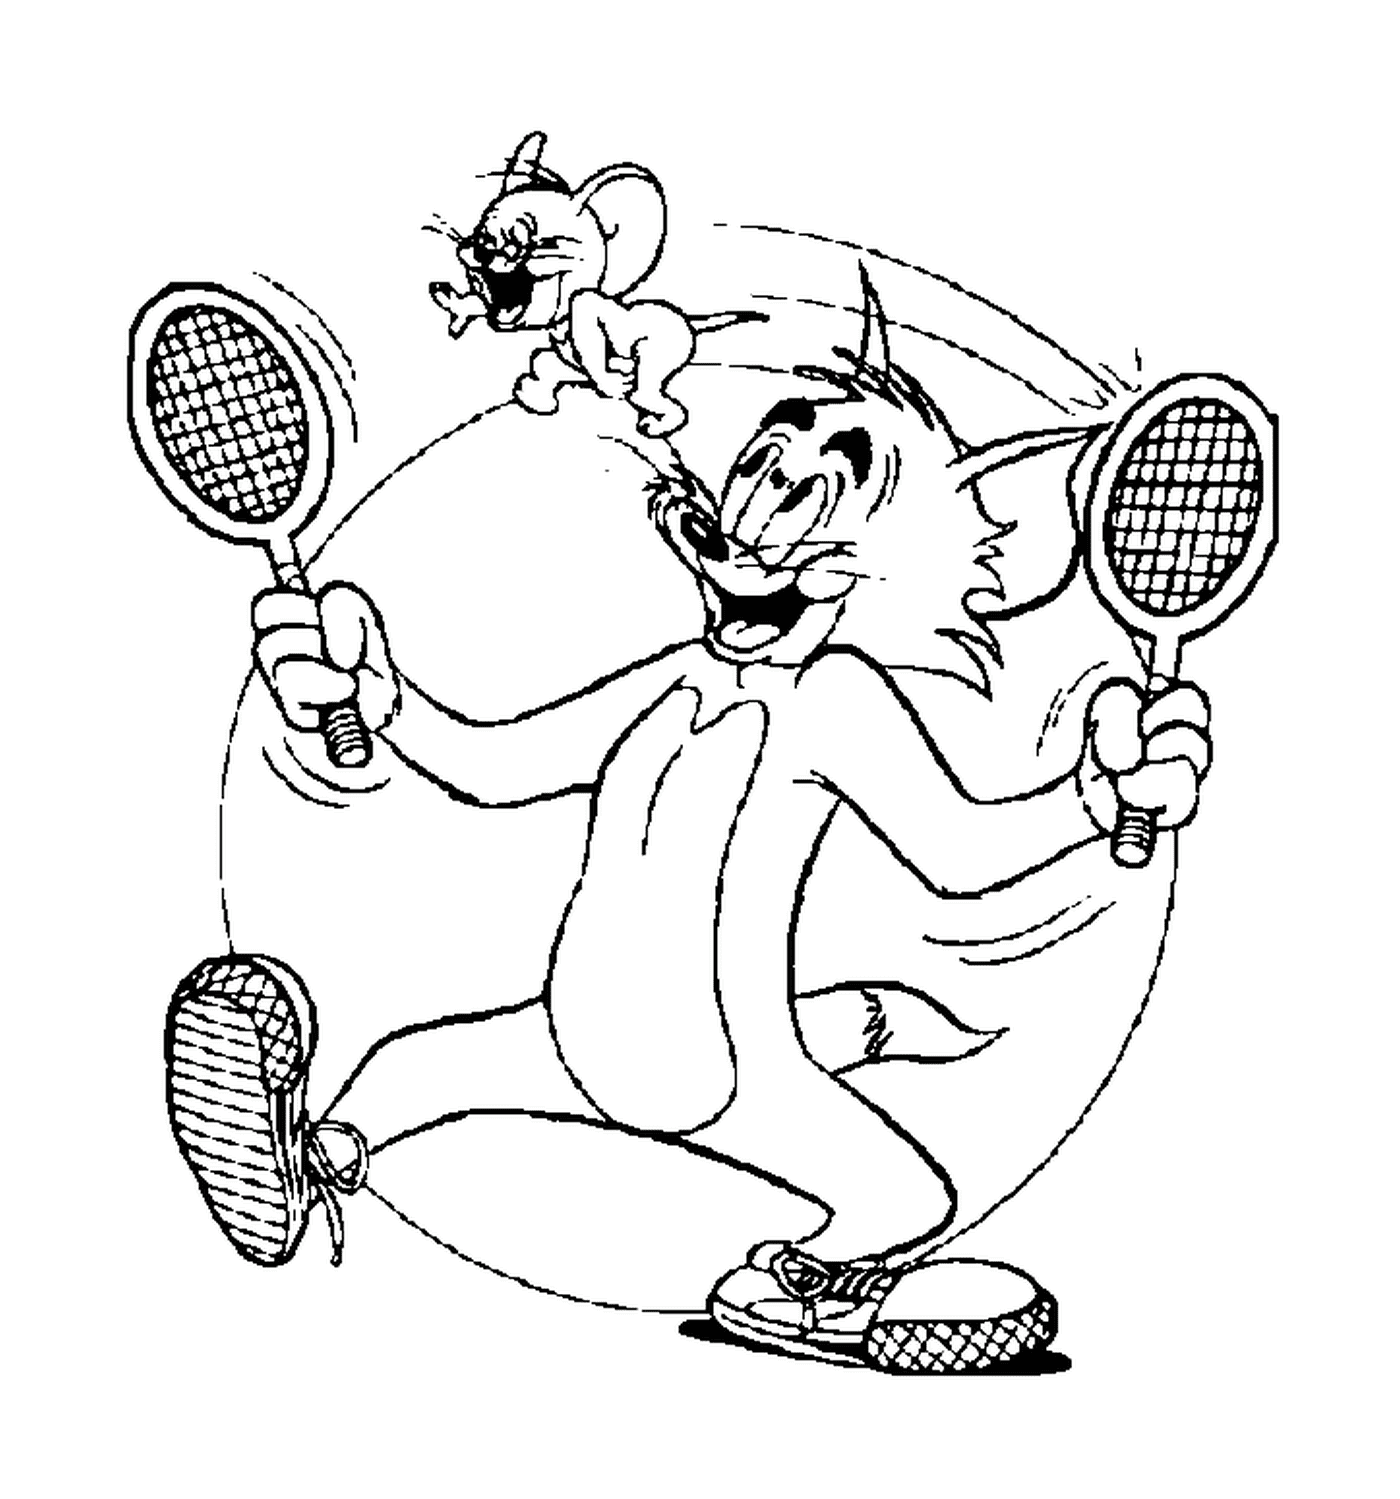  Tom y Jerry juegan al tenis 